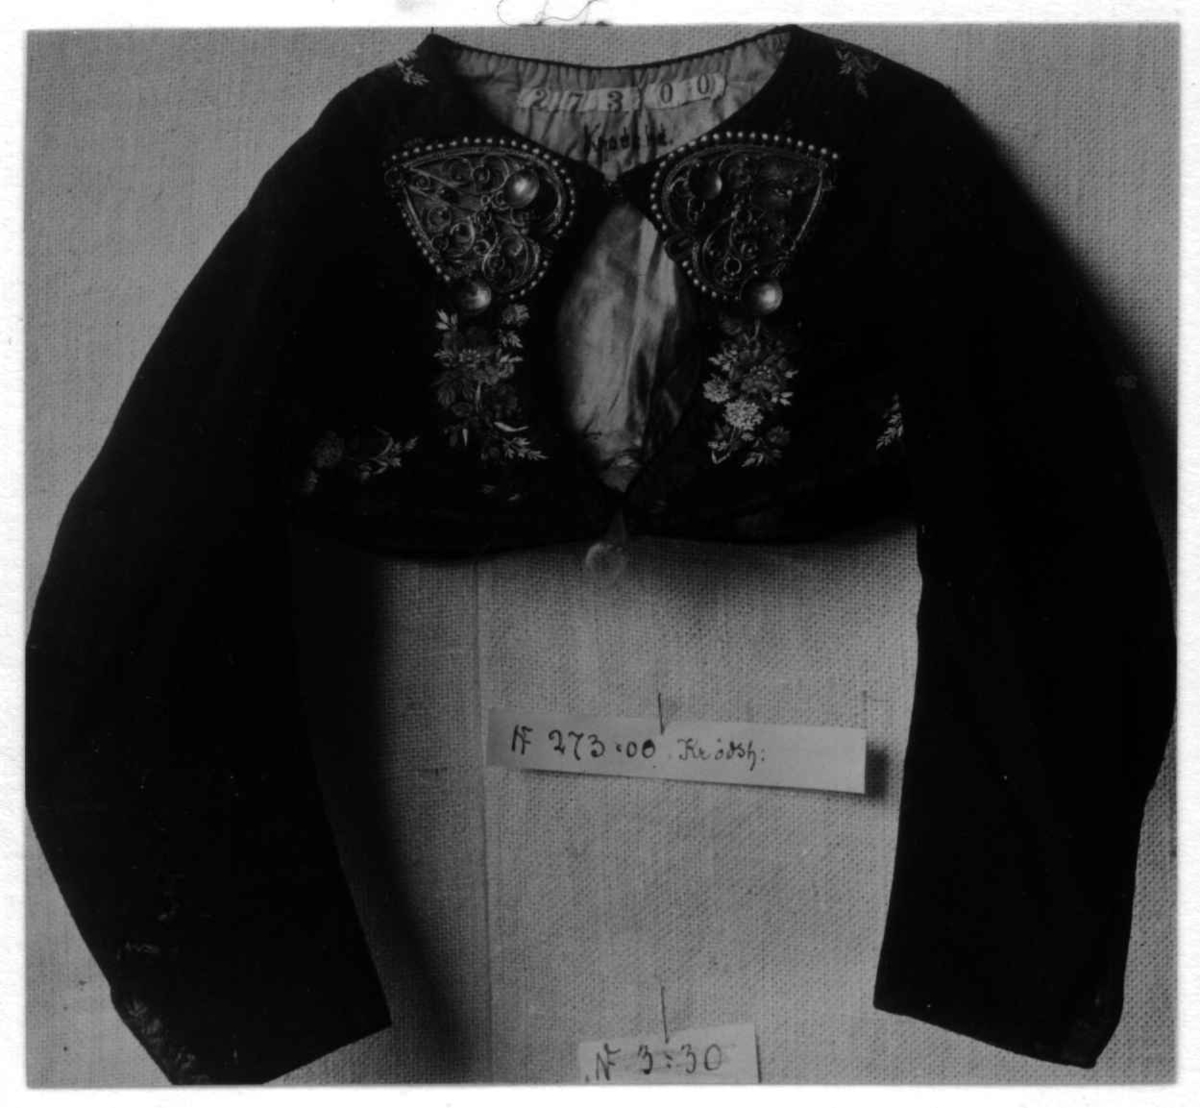 Svart trøye til jente av klede med dekor av svarte brosjerte silkebånd, blomster.
Trøyespenner av sølvfilligran (hører til NF.1900-0273 enl. referanser).